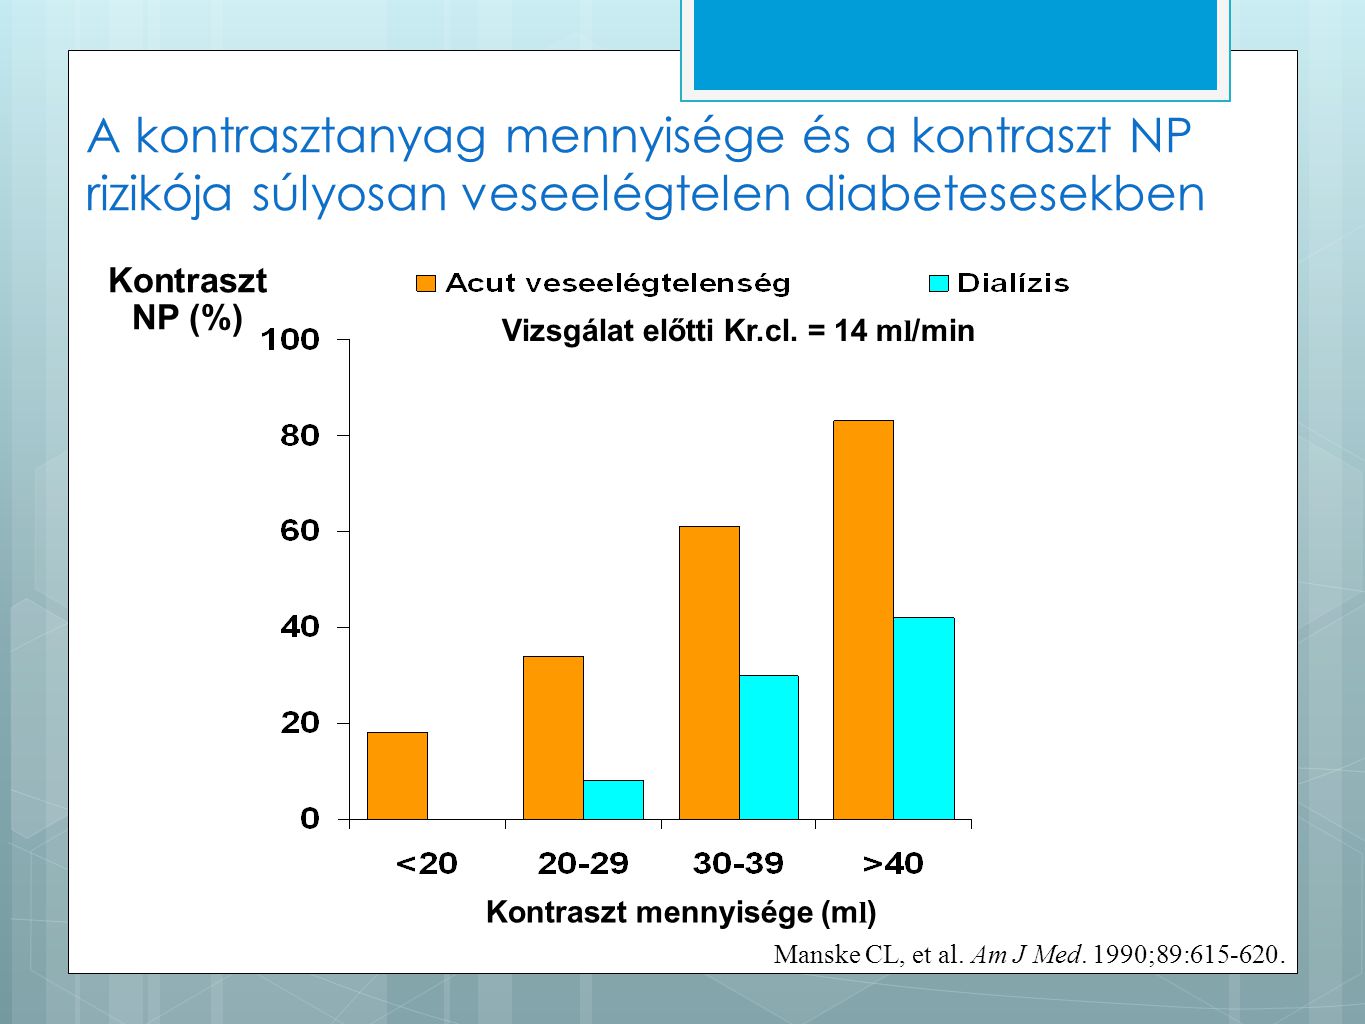 A kontrasztanyag mennyisége és a kontraszt NP rizikója súlyosan veseelégtelen diabetesesekben